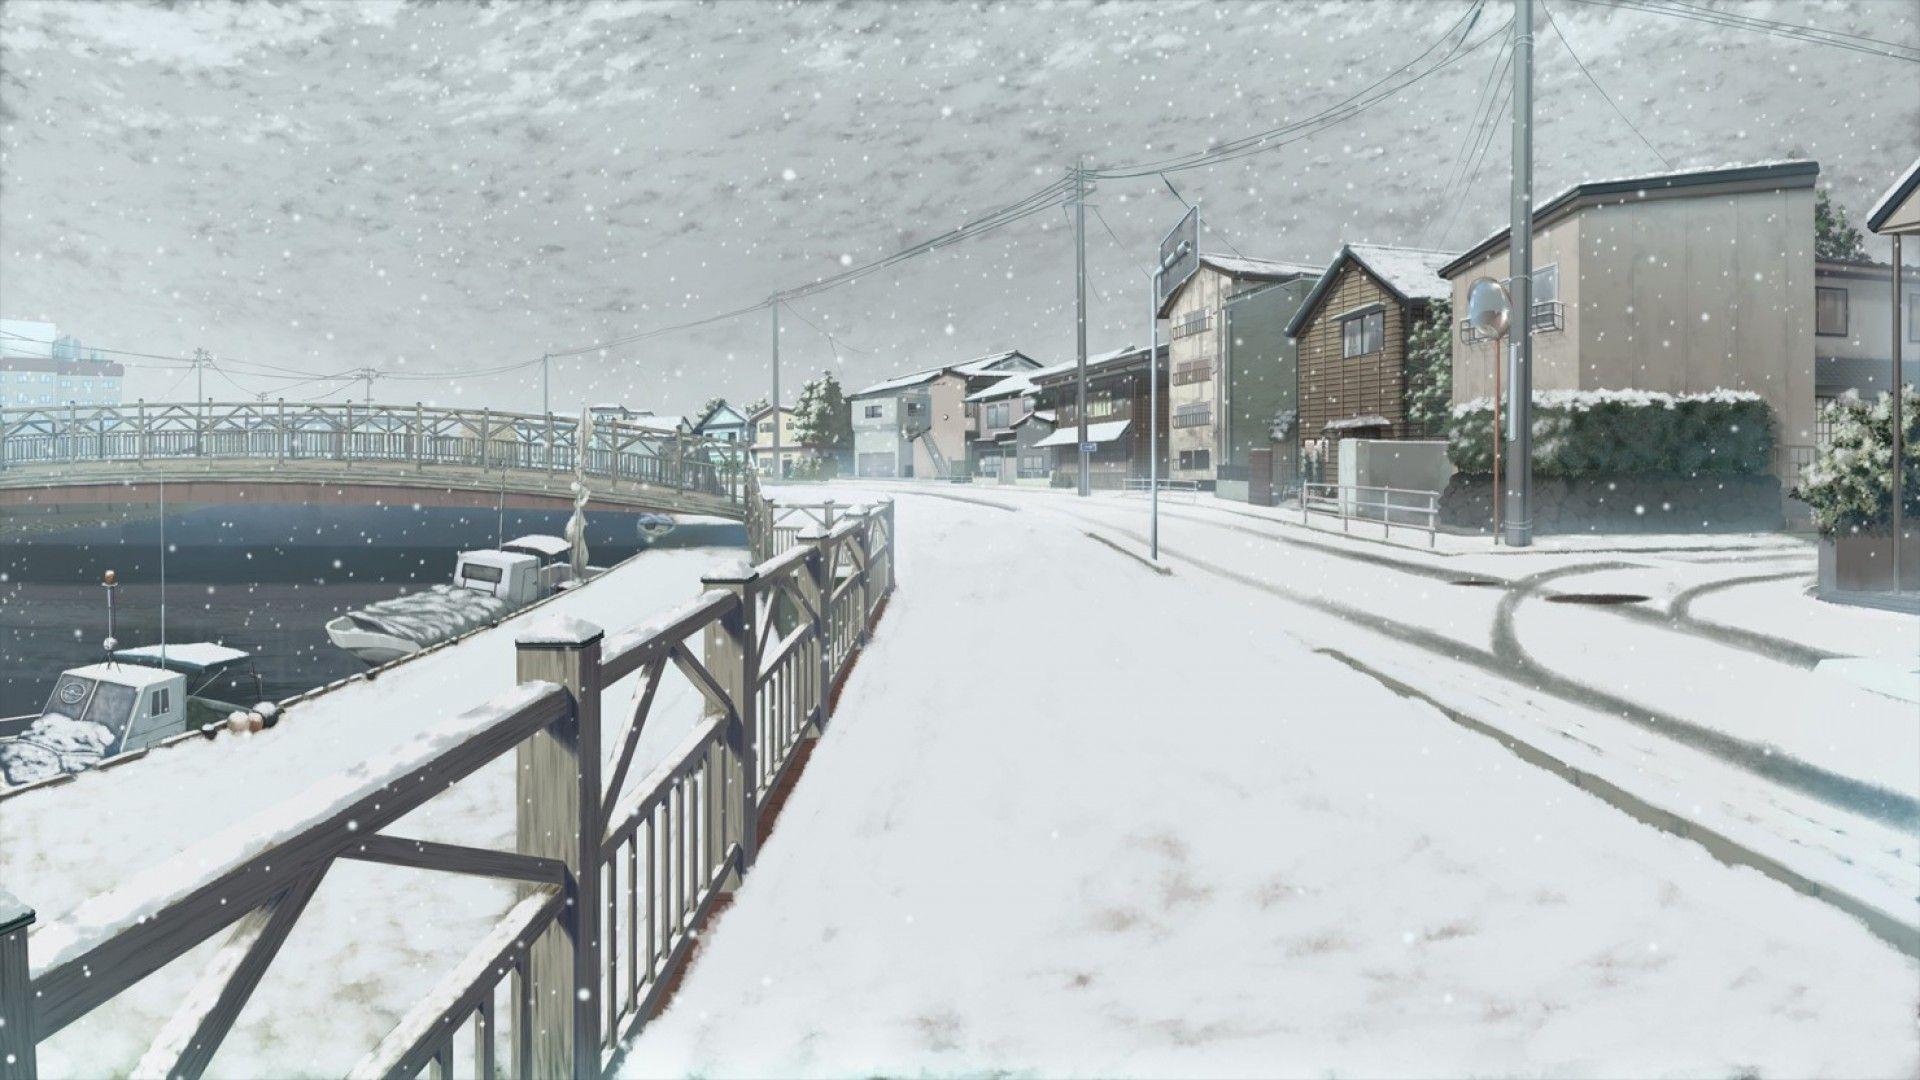 Anime Winter Scenery HD Wallpaperx1080. Winter scenery, Anime scenery, Scenery wallpaper